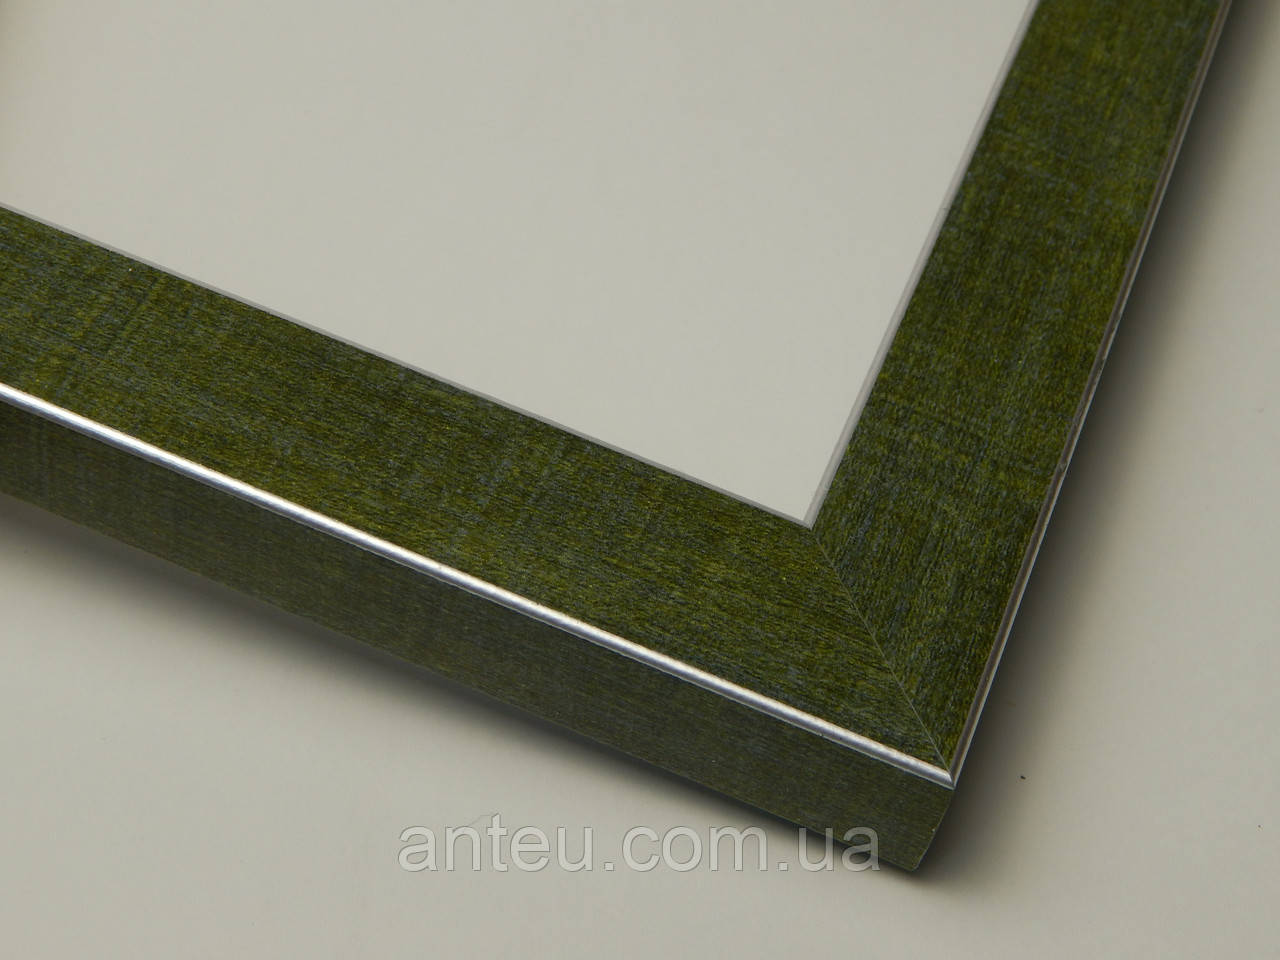 Рамка А2(420х594). Зелений зі срібною окантовкою. Профиль 22 мм. Для картин,плакатов,фото